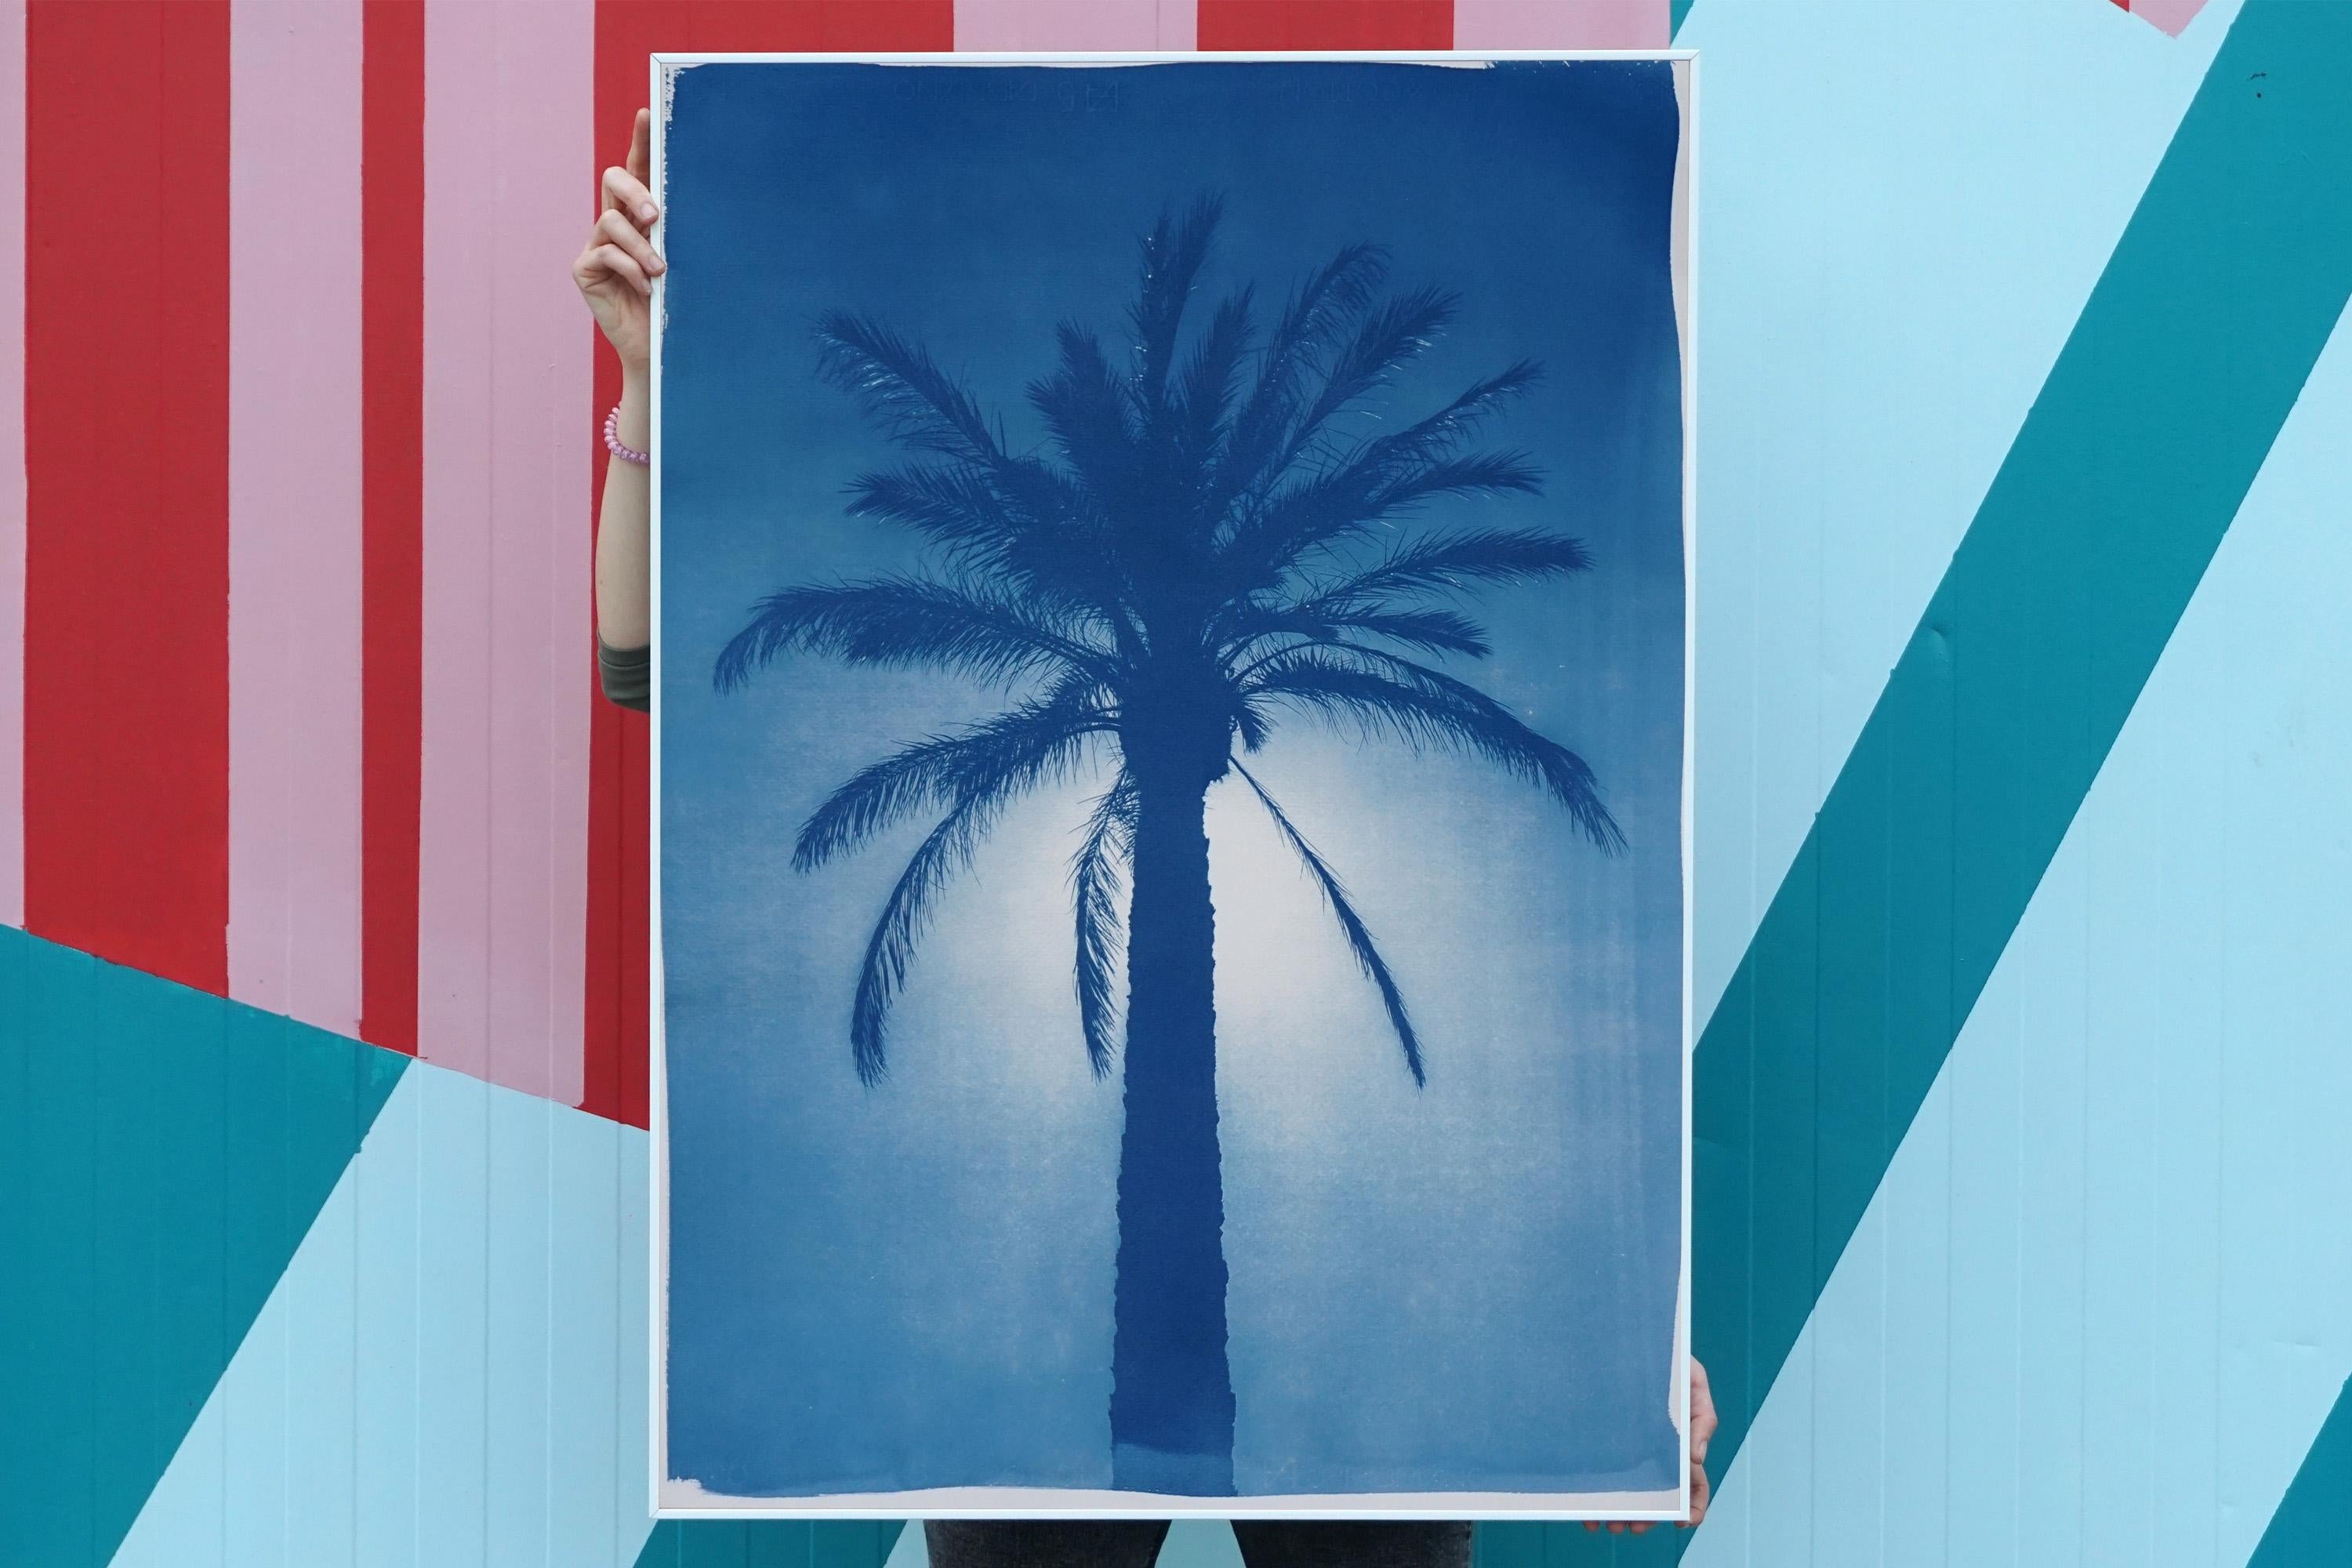 Il s'agit d'un cyanotype exclusif imprimé à la main en édition limitée.
Ce cyanotype montre un palmier du désert situé dans la majestueuse ville méditerranéenne du Caire, en Égypte.  

Détails :
+ Titre : Palmier de la Citadelle du Caire
+ Année :